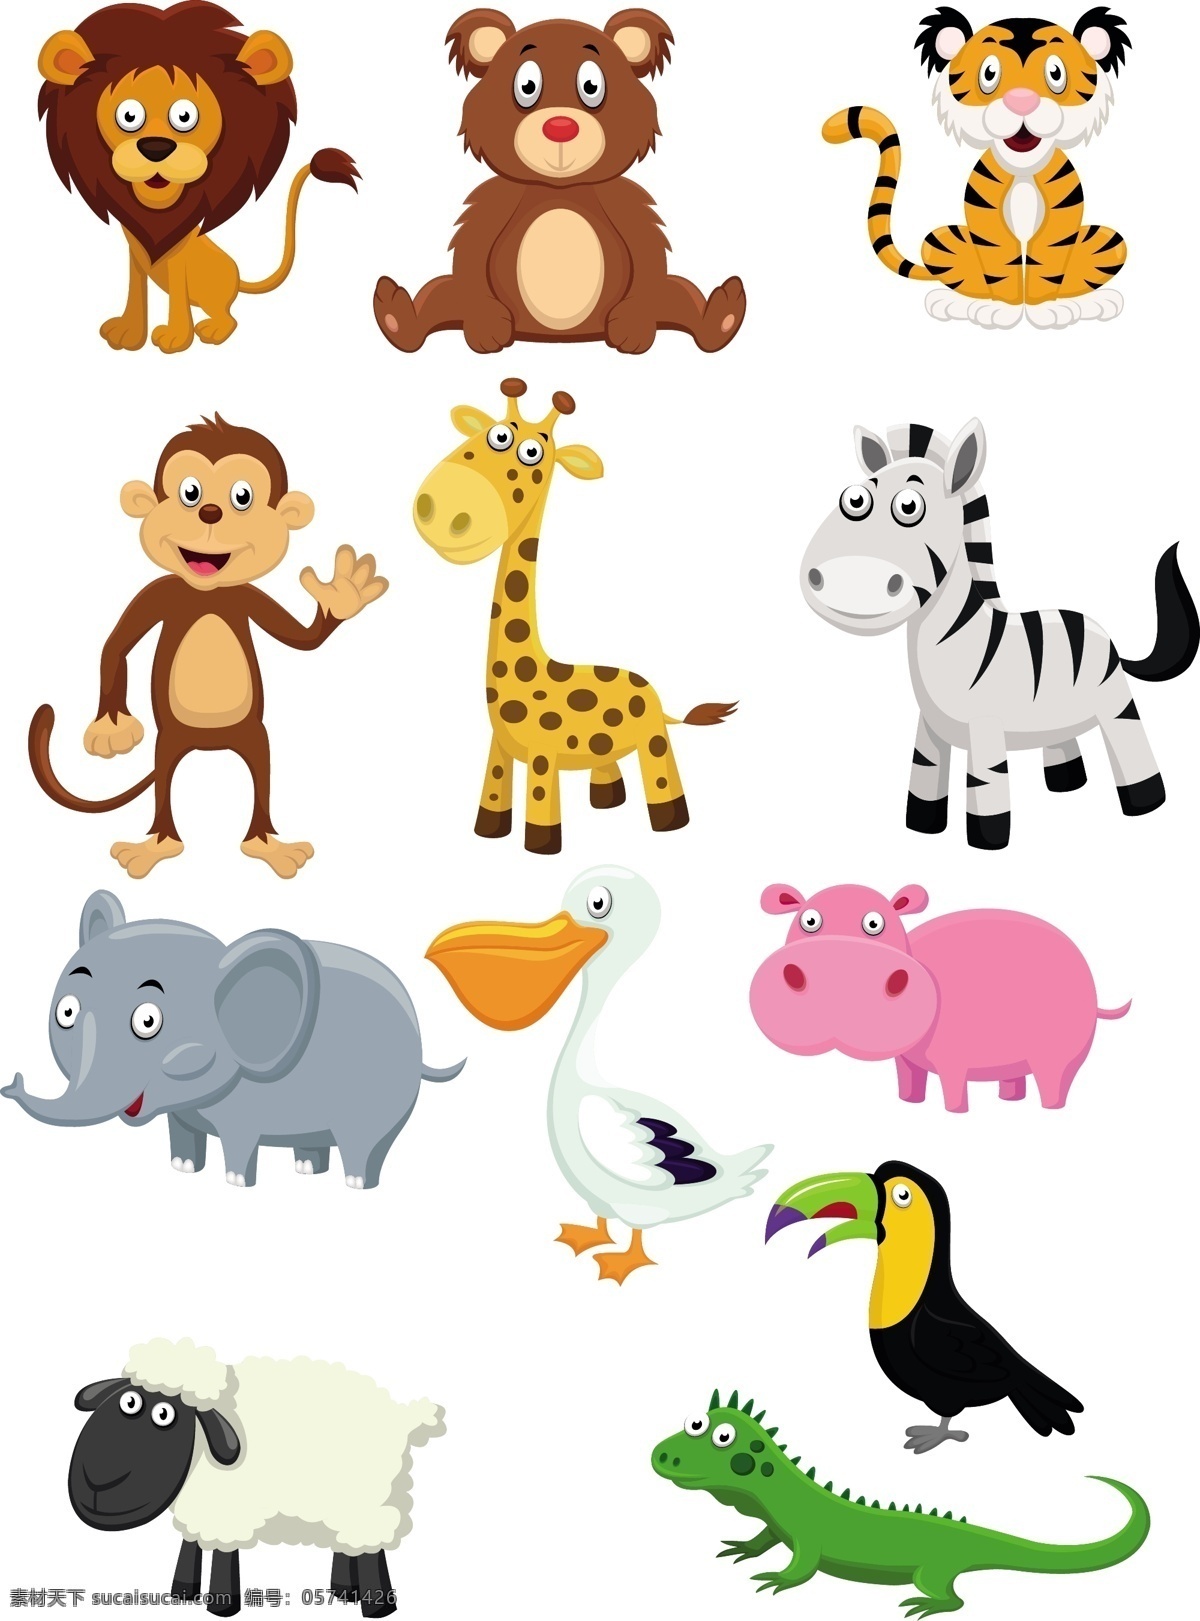 可爱 卡通 动物图片 可爱卡通动物 卡通动物 矢量素材 可爱动物 大眼动物 小鸡 大象 长颈鹿 斑马 小狗 狮子 小猫 乌龟 绵羊 恐龙 动物设计 陆地动物 生物世界 卡通设计素材